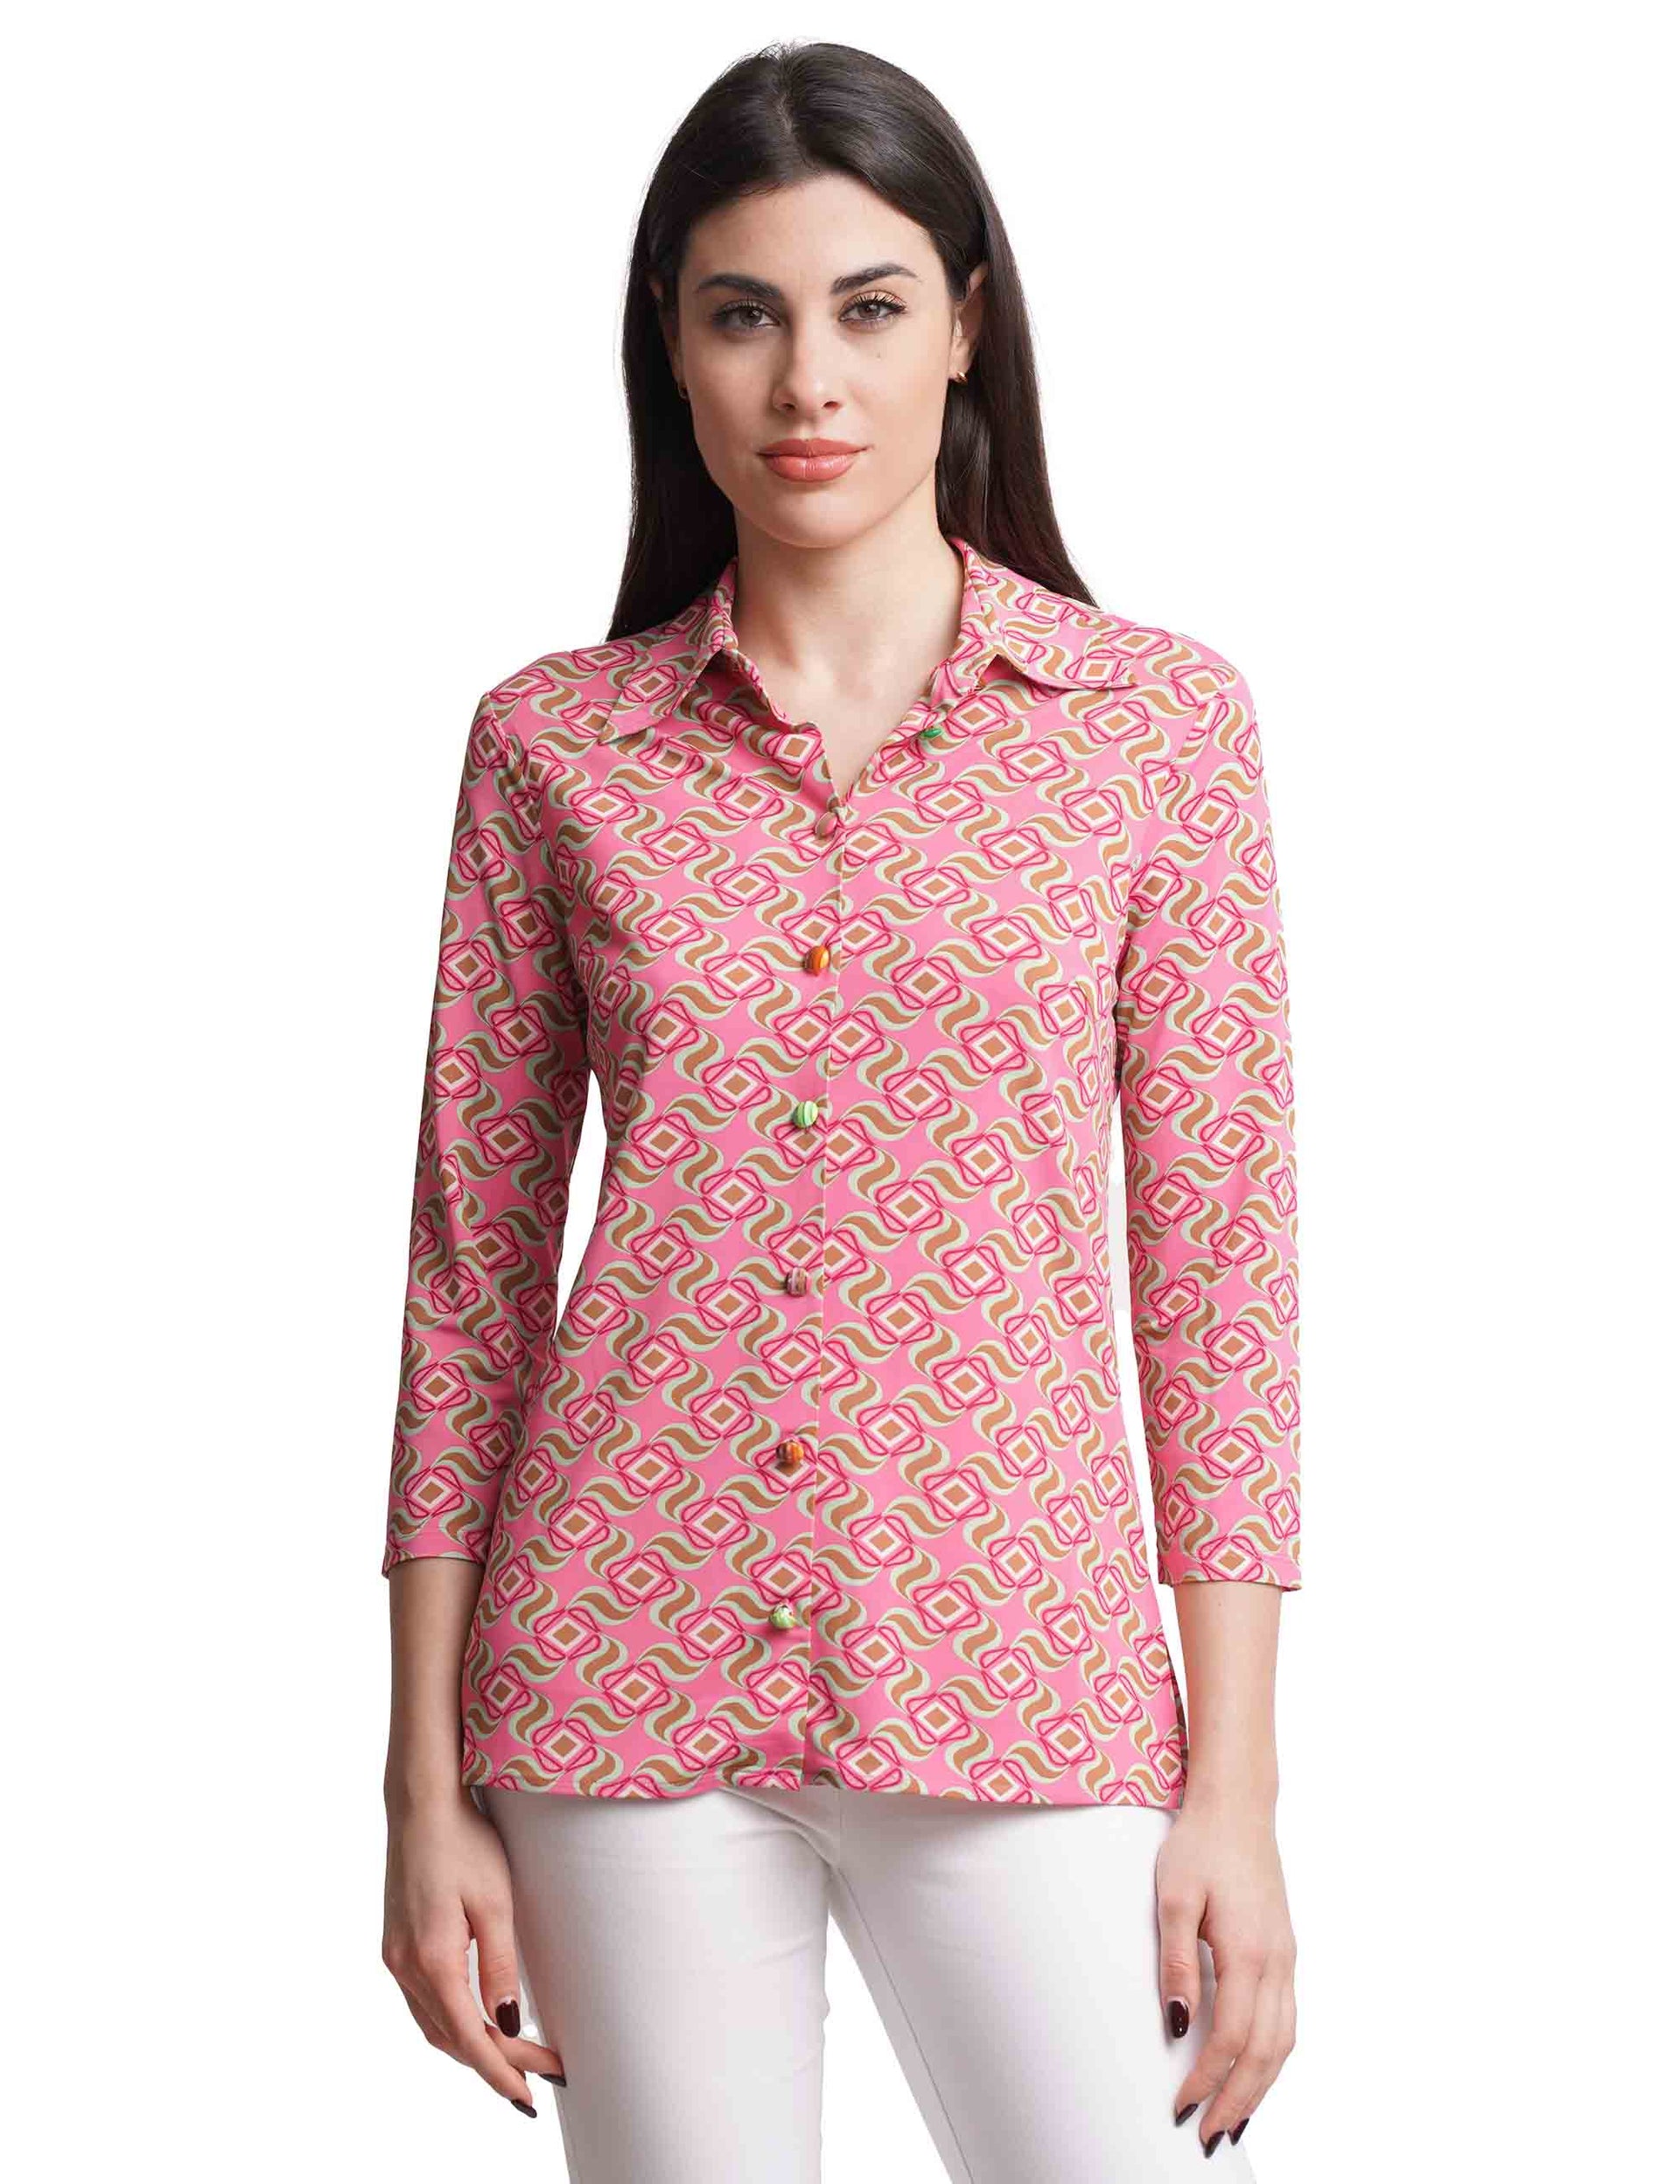 Camicie donna Swirl Print in jersey rosa con maniche 3/4